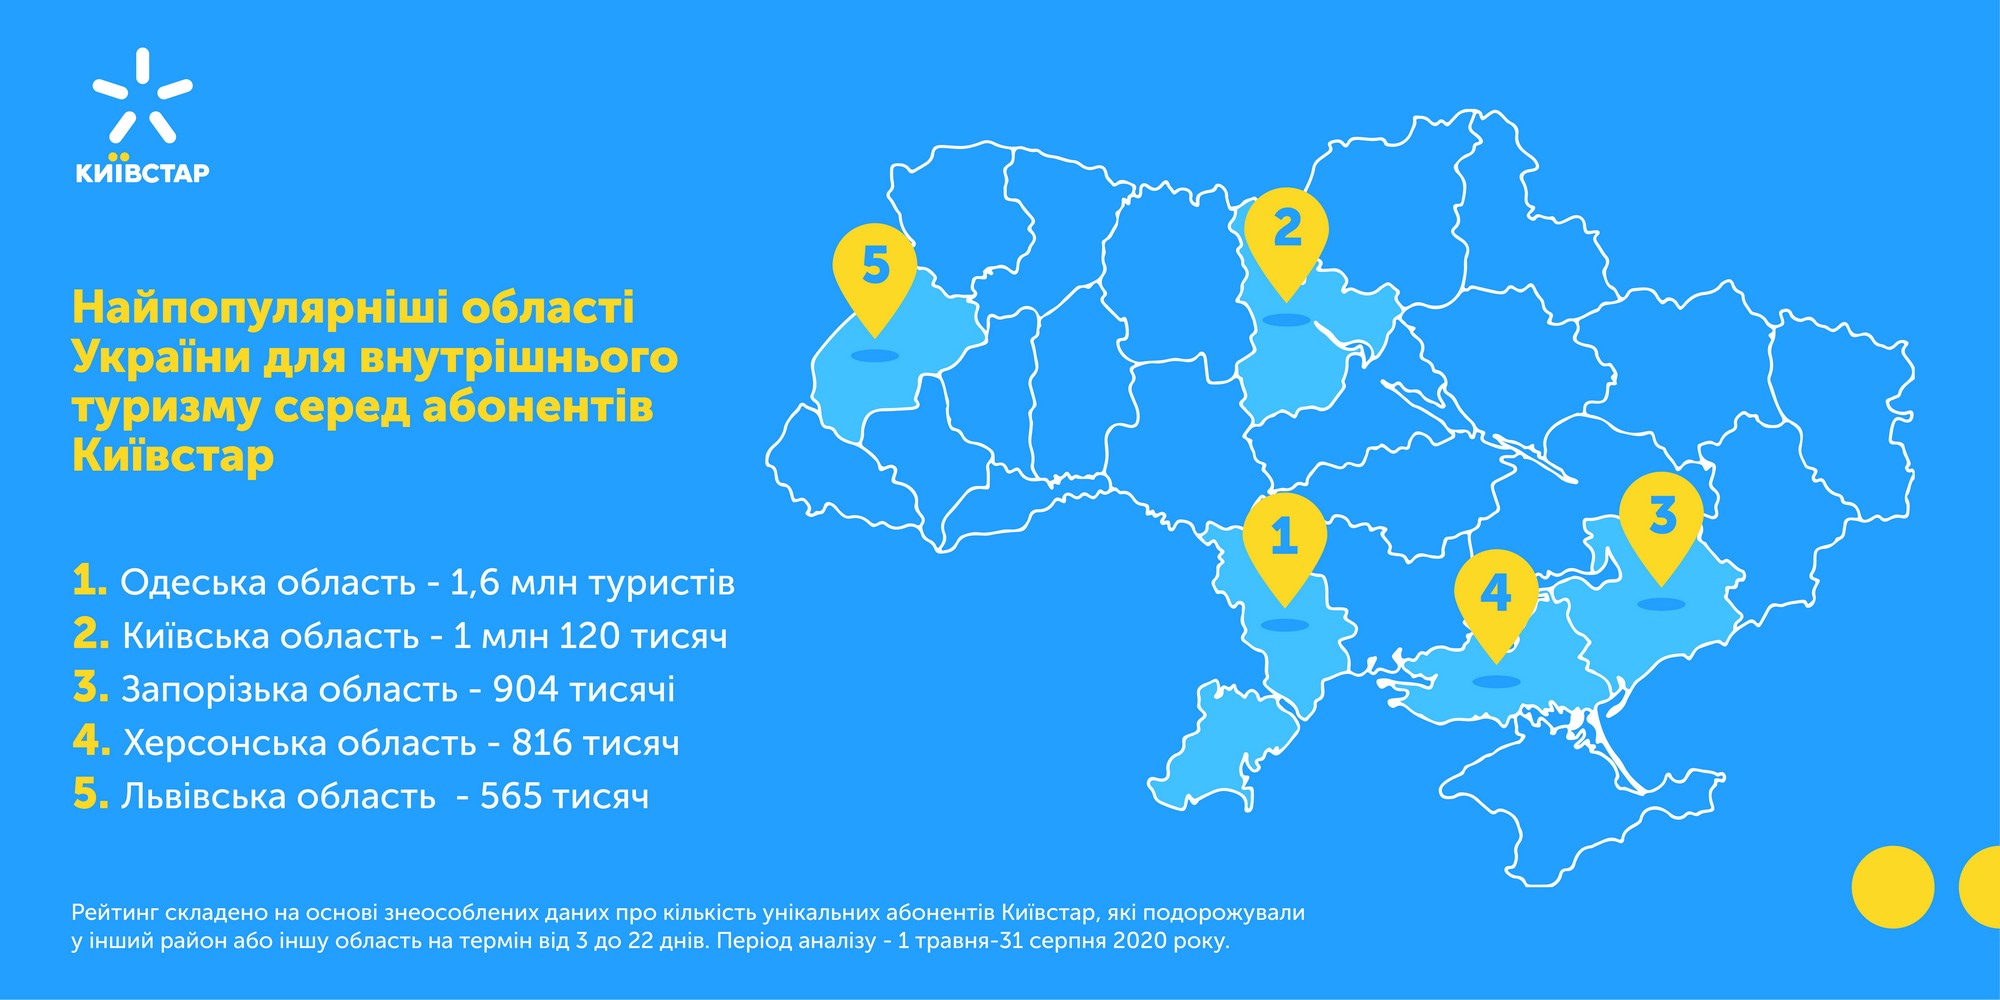 Количество внутренних туристов в Украине уменьшилось на 17%, но в курортный сезон они осуществили 11,5 млн поездок по стране [инфографика]